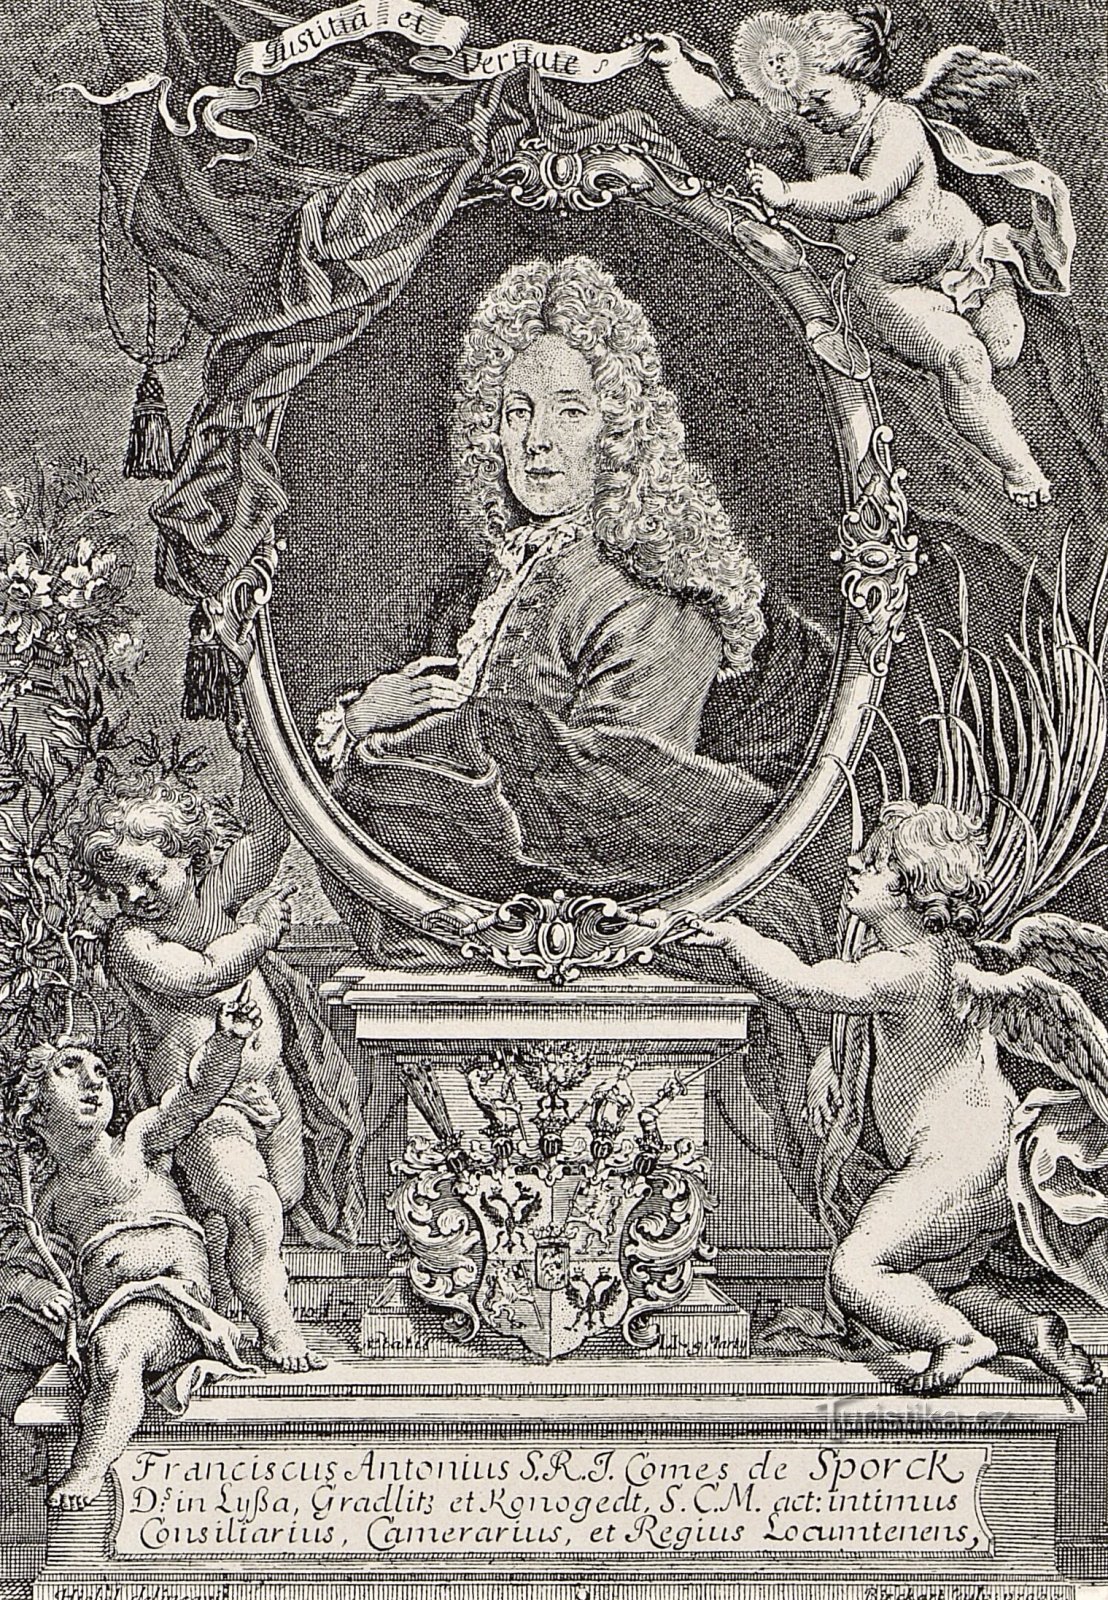 Comte František A. Spork sur une gravure de 1713